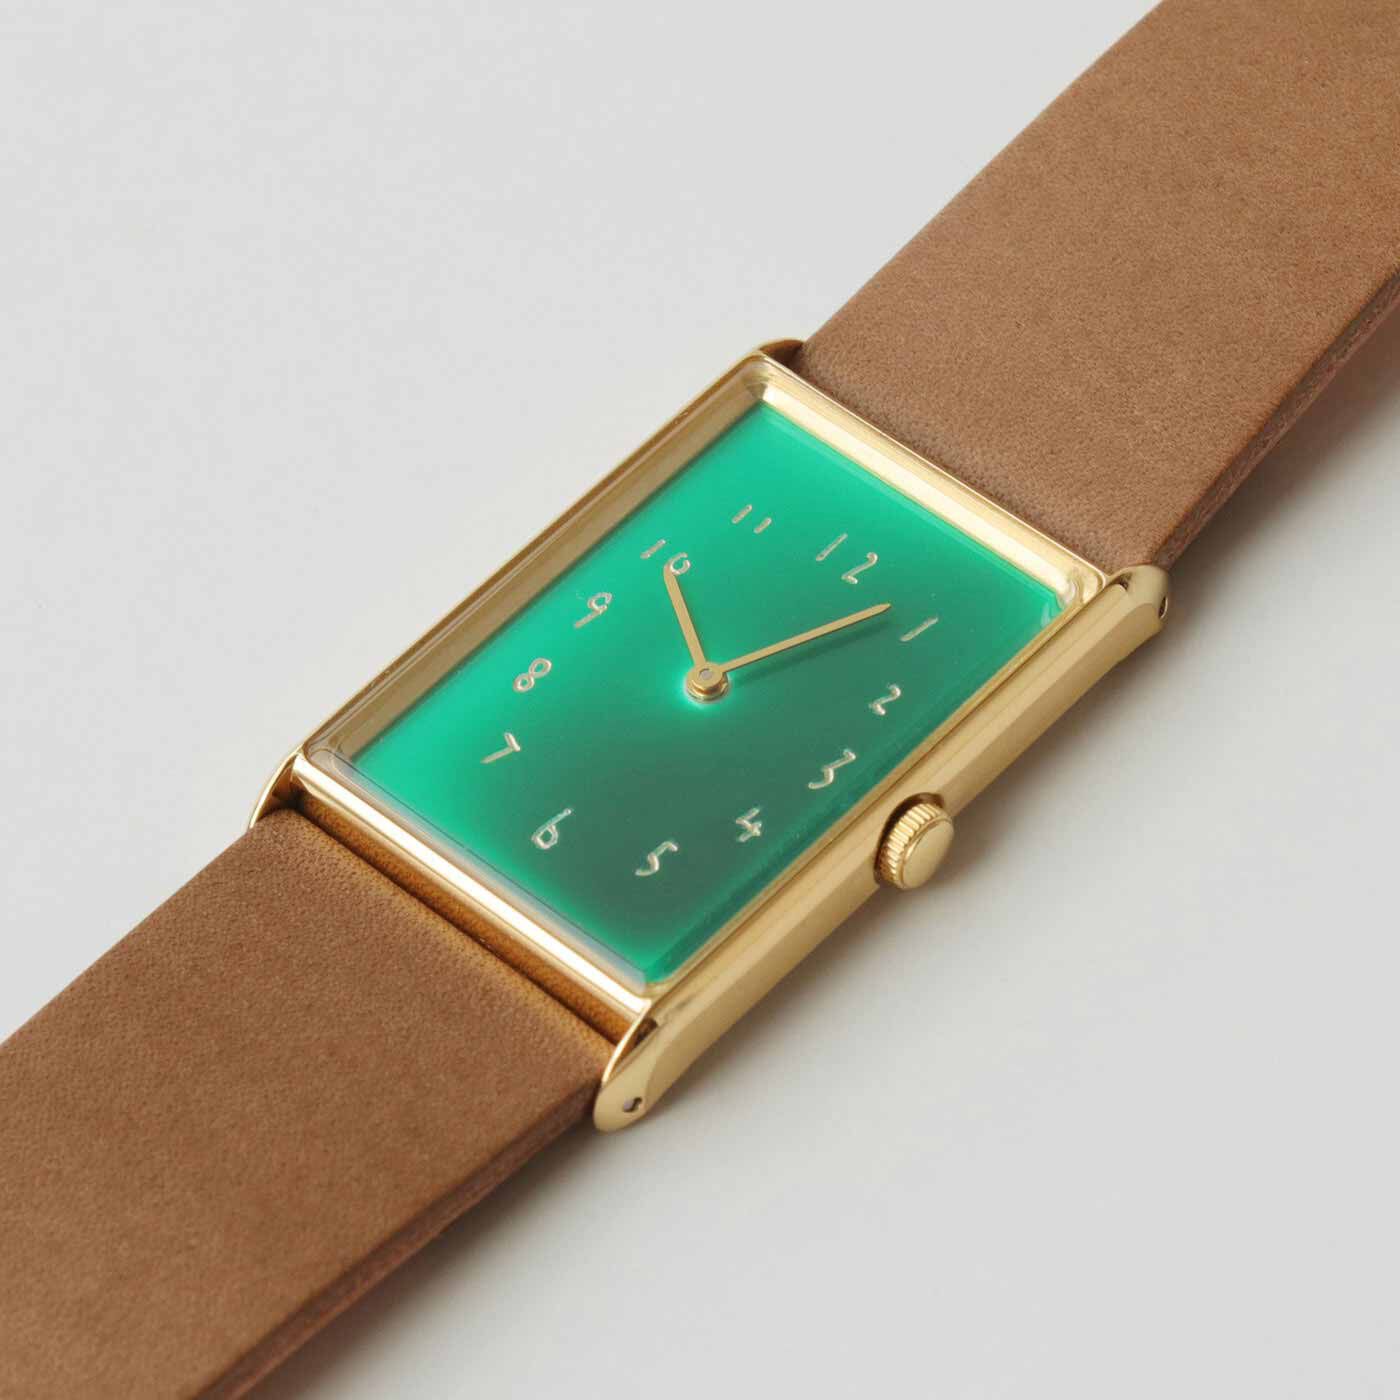 ＆Stories|金沢の時計職人が手掛けた 聖なる泉の翠色に見惚れる腕時計〈ブラウン〉[時計：日本製]|鉱石のマラカイトのような深い緑色を「溜塗（ためぬり）」という手法で表現。透明感のある絵の具を平筆に含ませ、さっとひと塗りで仕上げます。